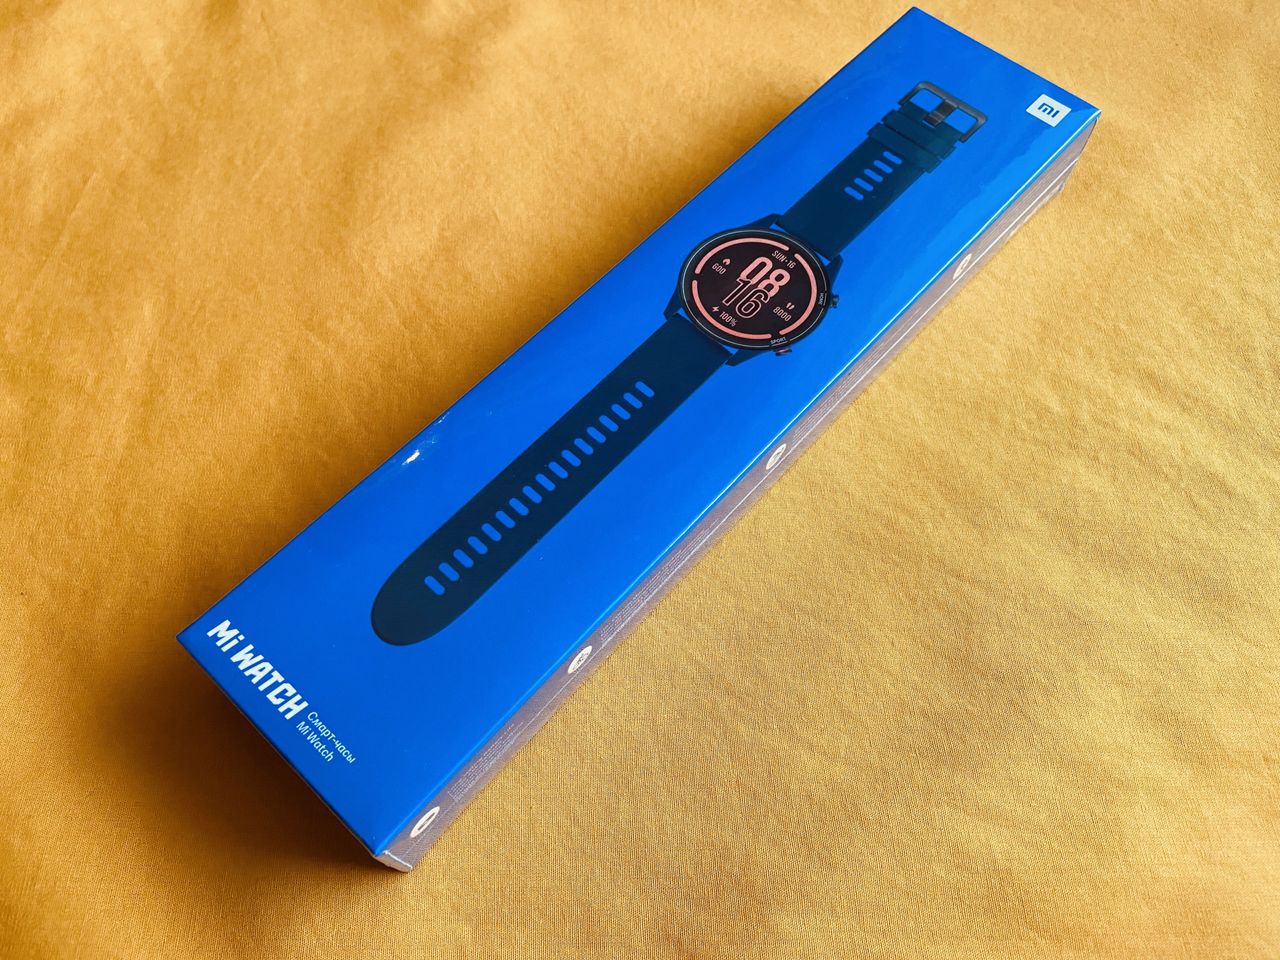 Smartwatch Xiaomi - nagroda w konkursie blogowym